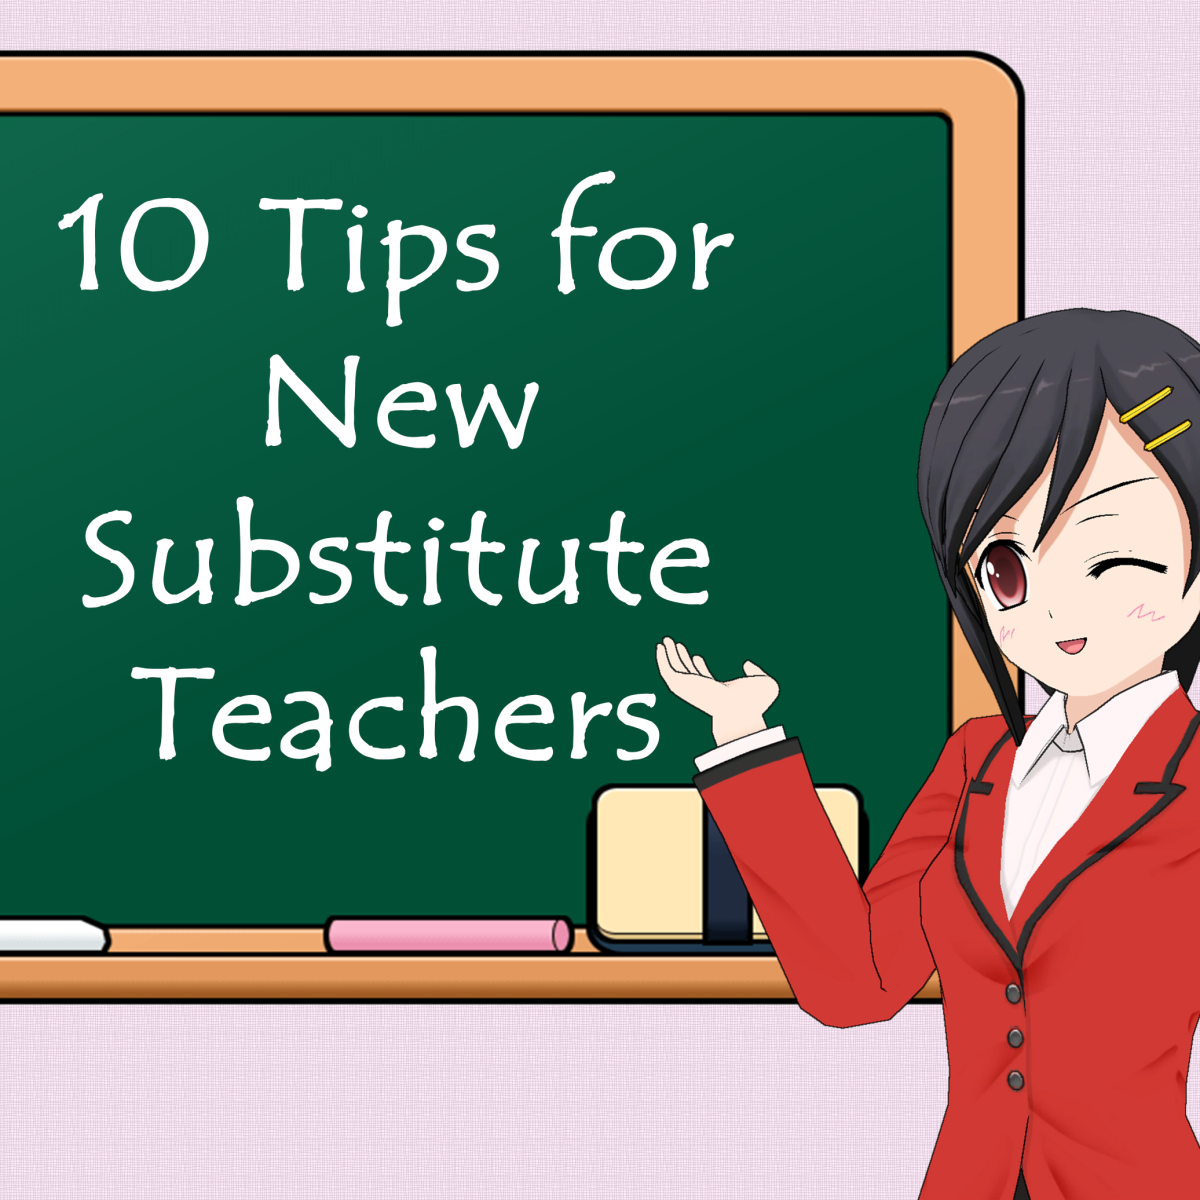 10-tips-for-new-substitute-teachers-owlcation